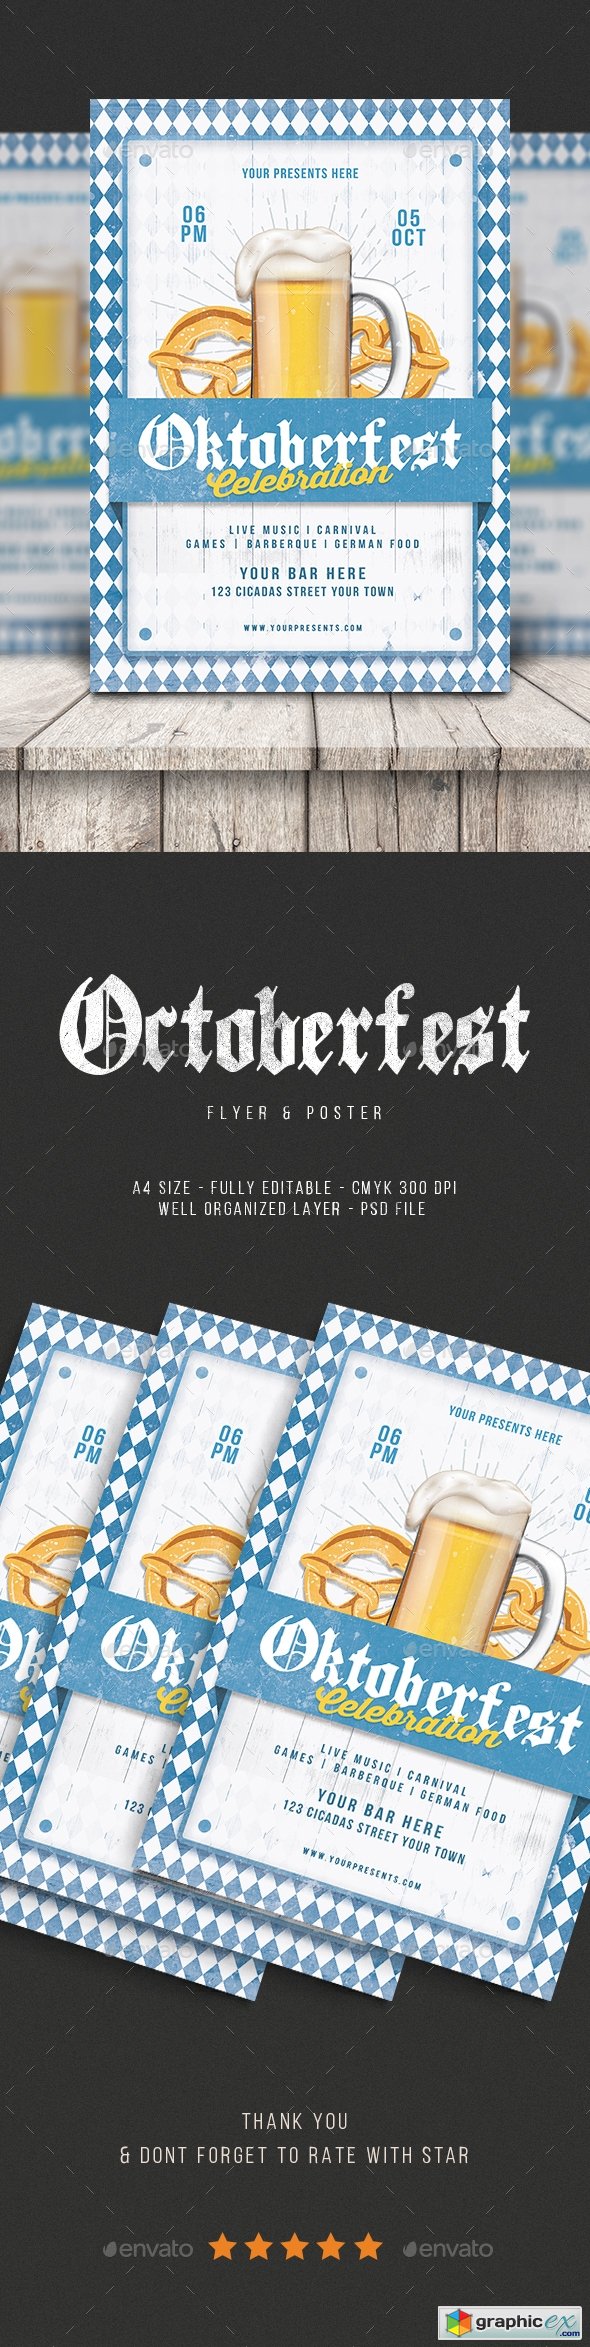 Oktoberfest Flyer vol.4